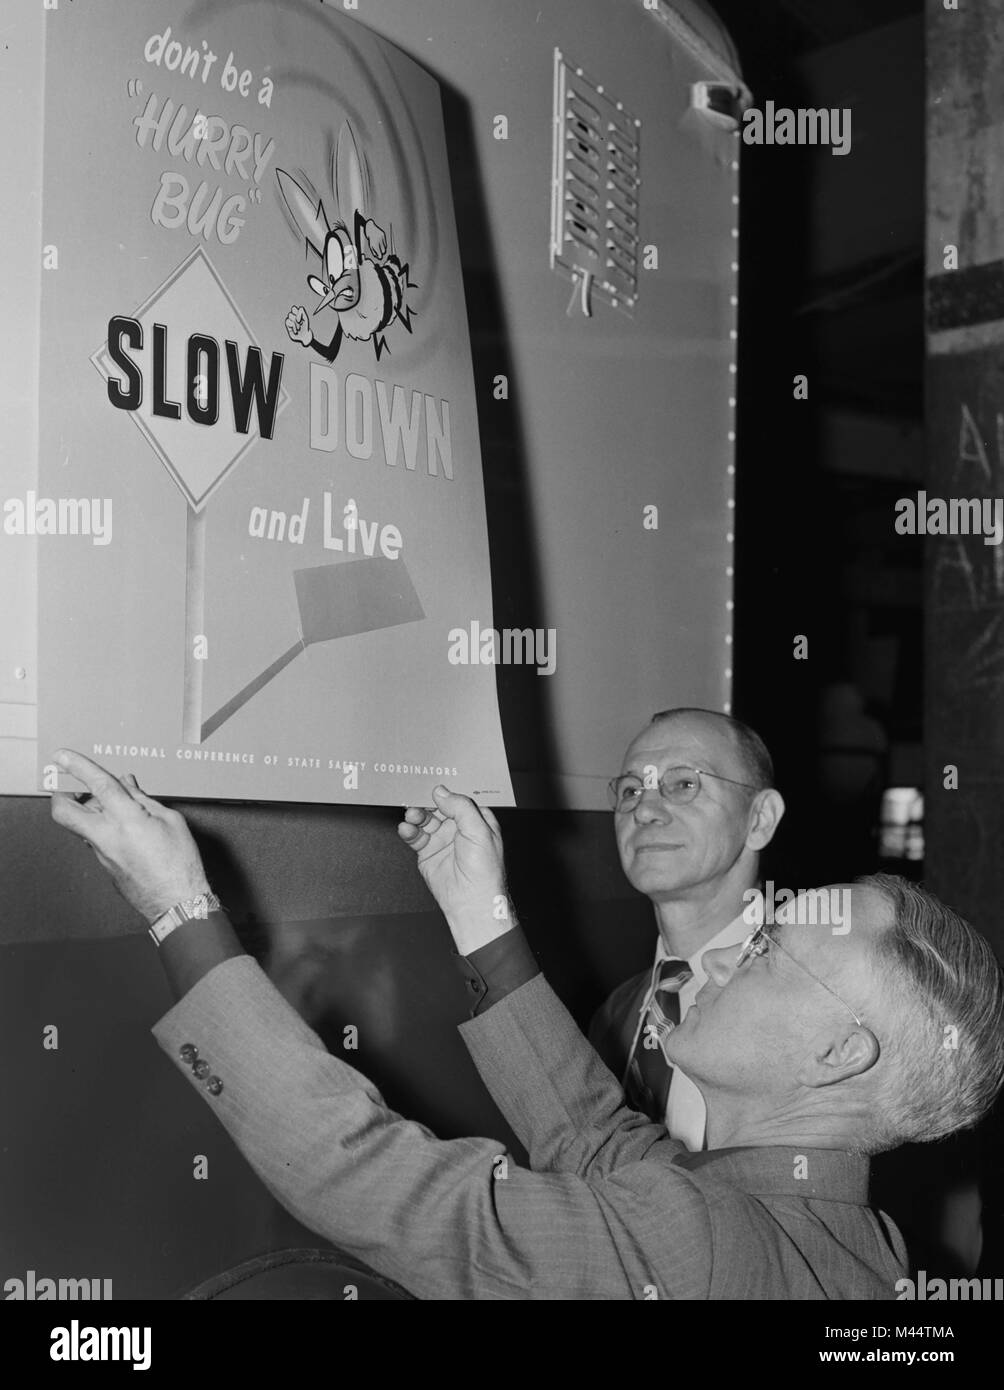 État de l'Illinois ont accrocher un poster de la fonction publique à propos de la sécurité de la conduite, ca. 1960. Banque D'Images